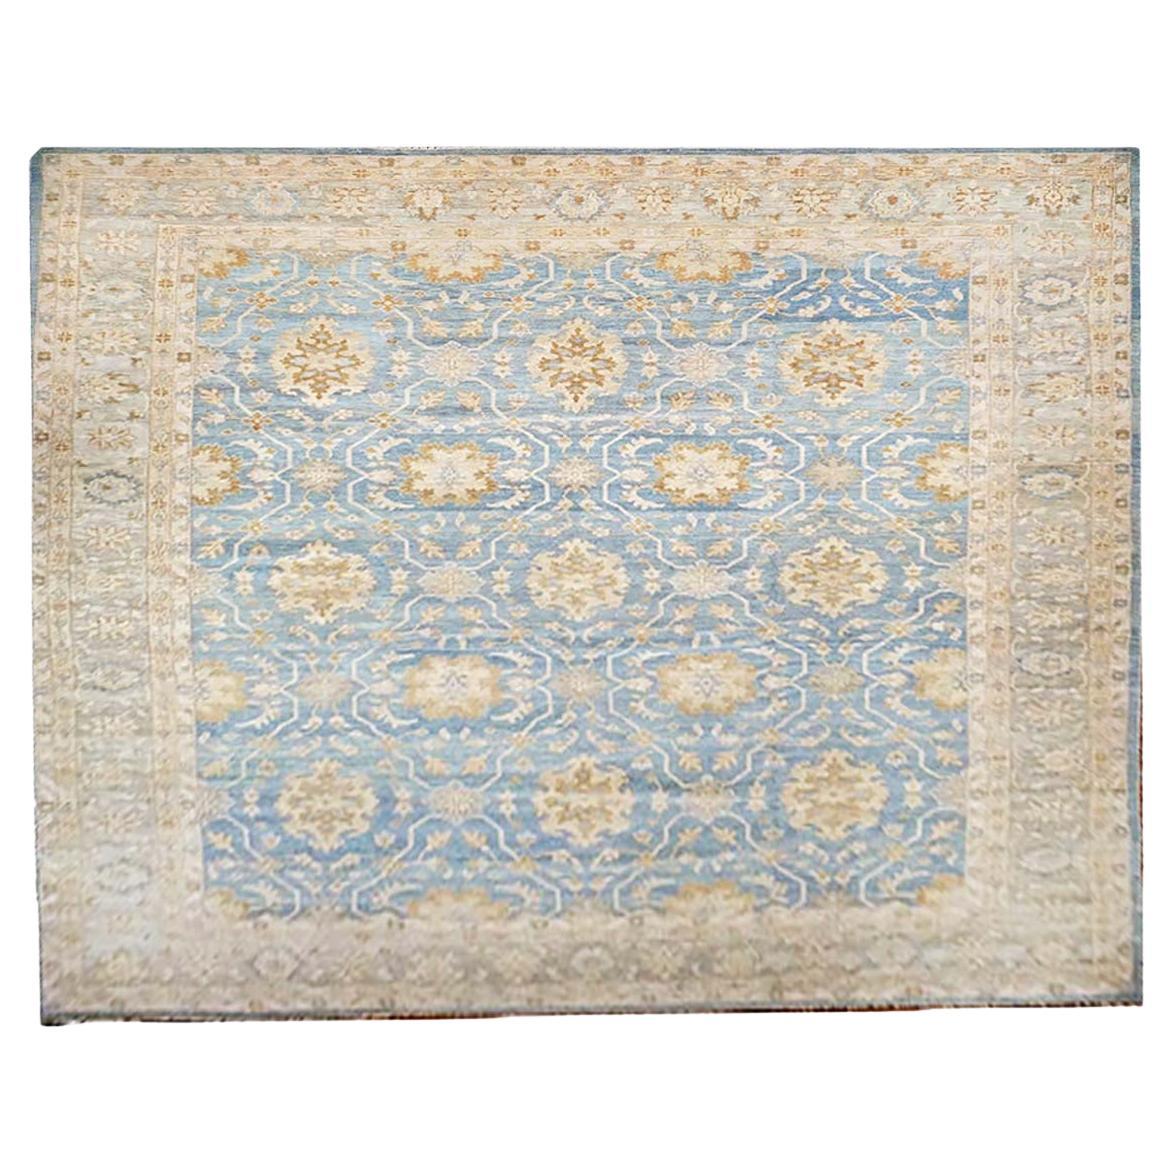 Sultanabad Master 10x14 Blauer und goldener handgefertigter Teppich aus dem 21. Jahrhundert